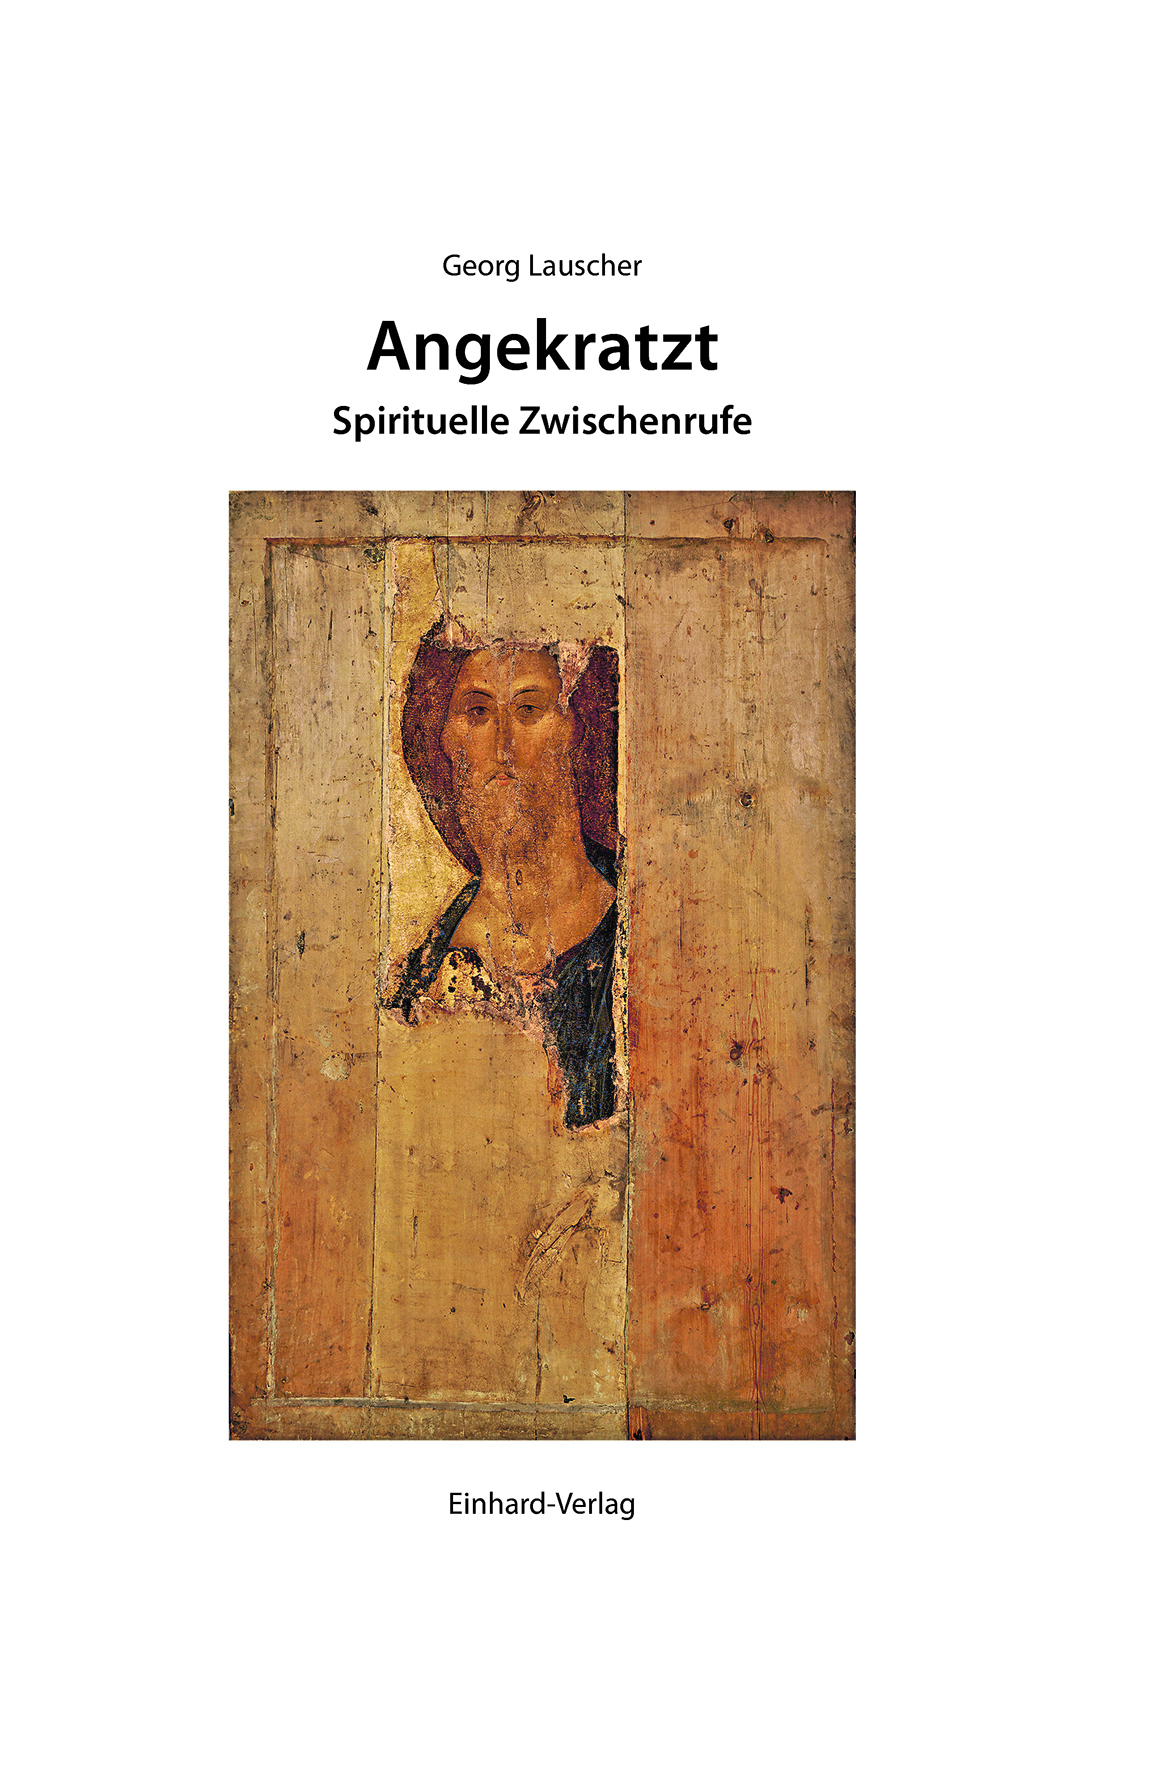 Eine Jesus-Ikone, die dem russischen Ikonenmaler Andrei Rubljow  zugeschrieben wird, ist das Sinnbild des Buches. (c) Einhard-Verlag